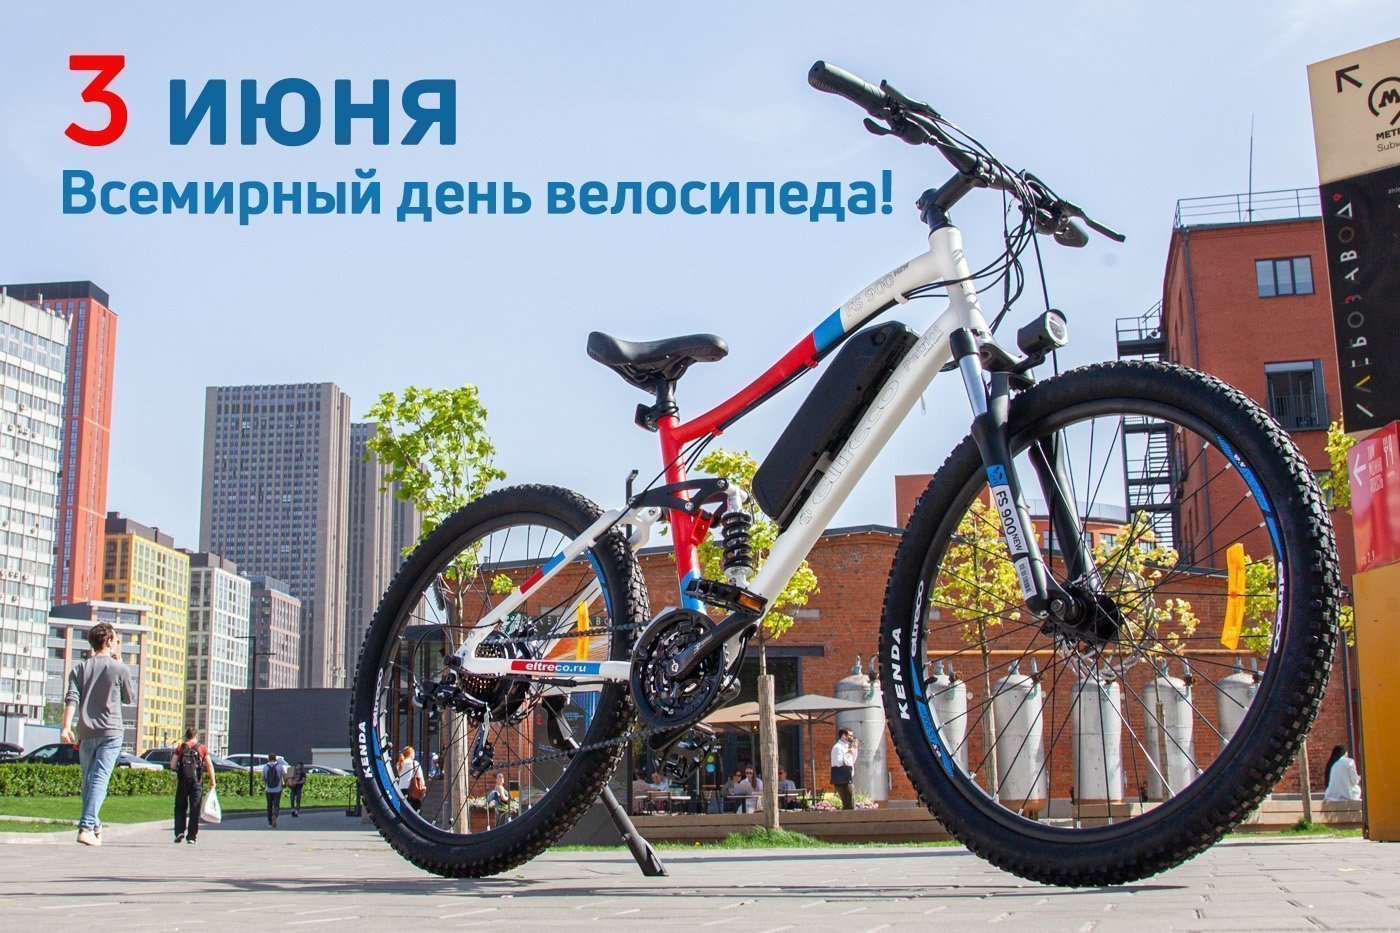 3 июня - Всемирный день велосипеда!